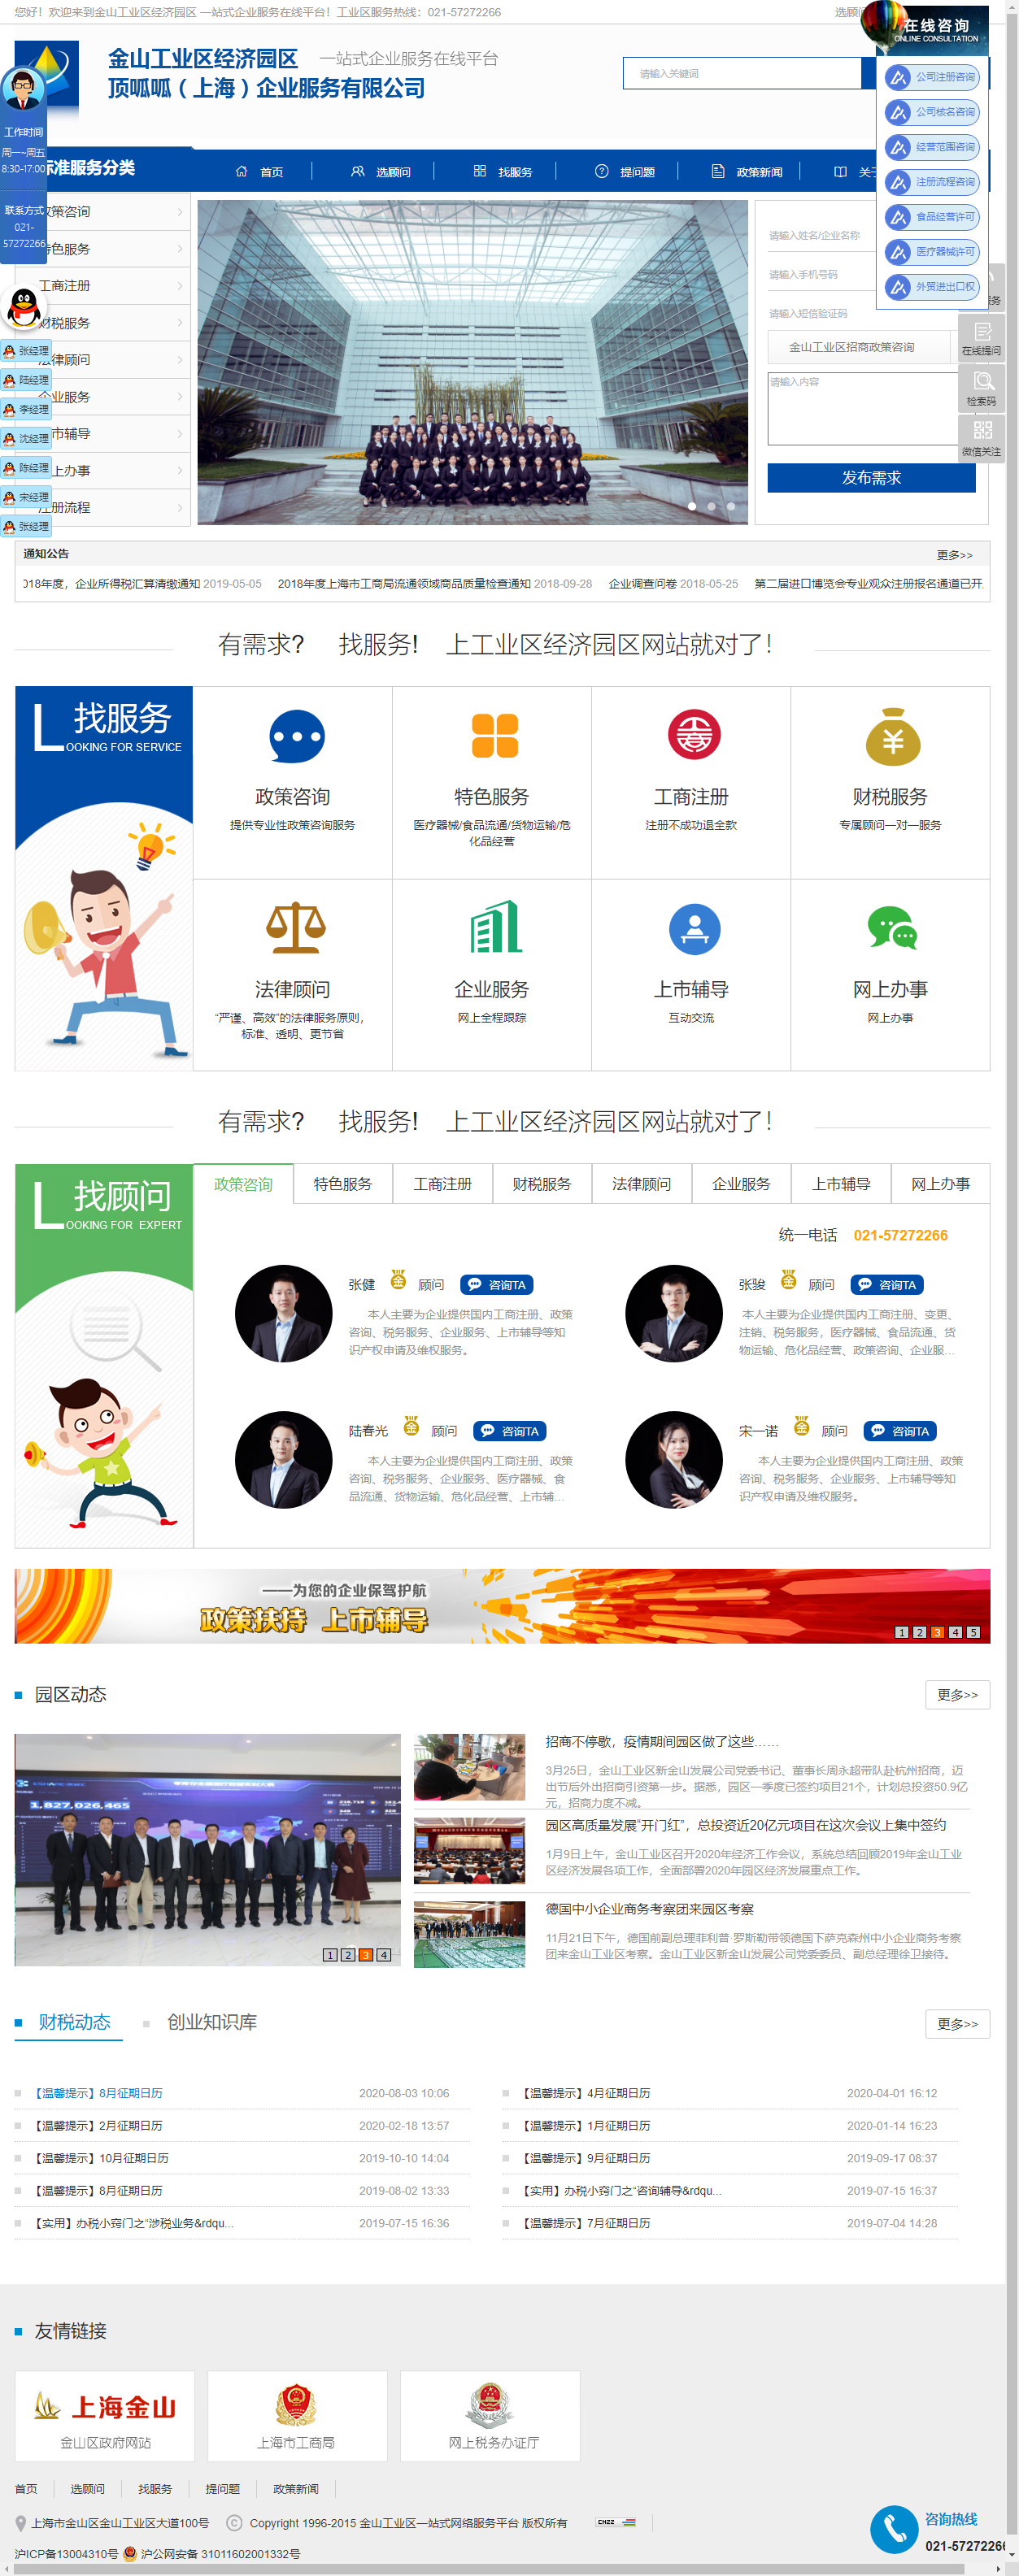 上海时兴经济发展有限公司网站案例